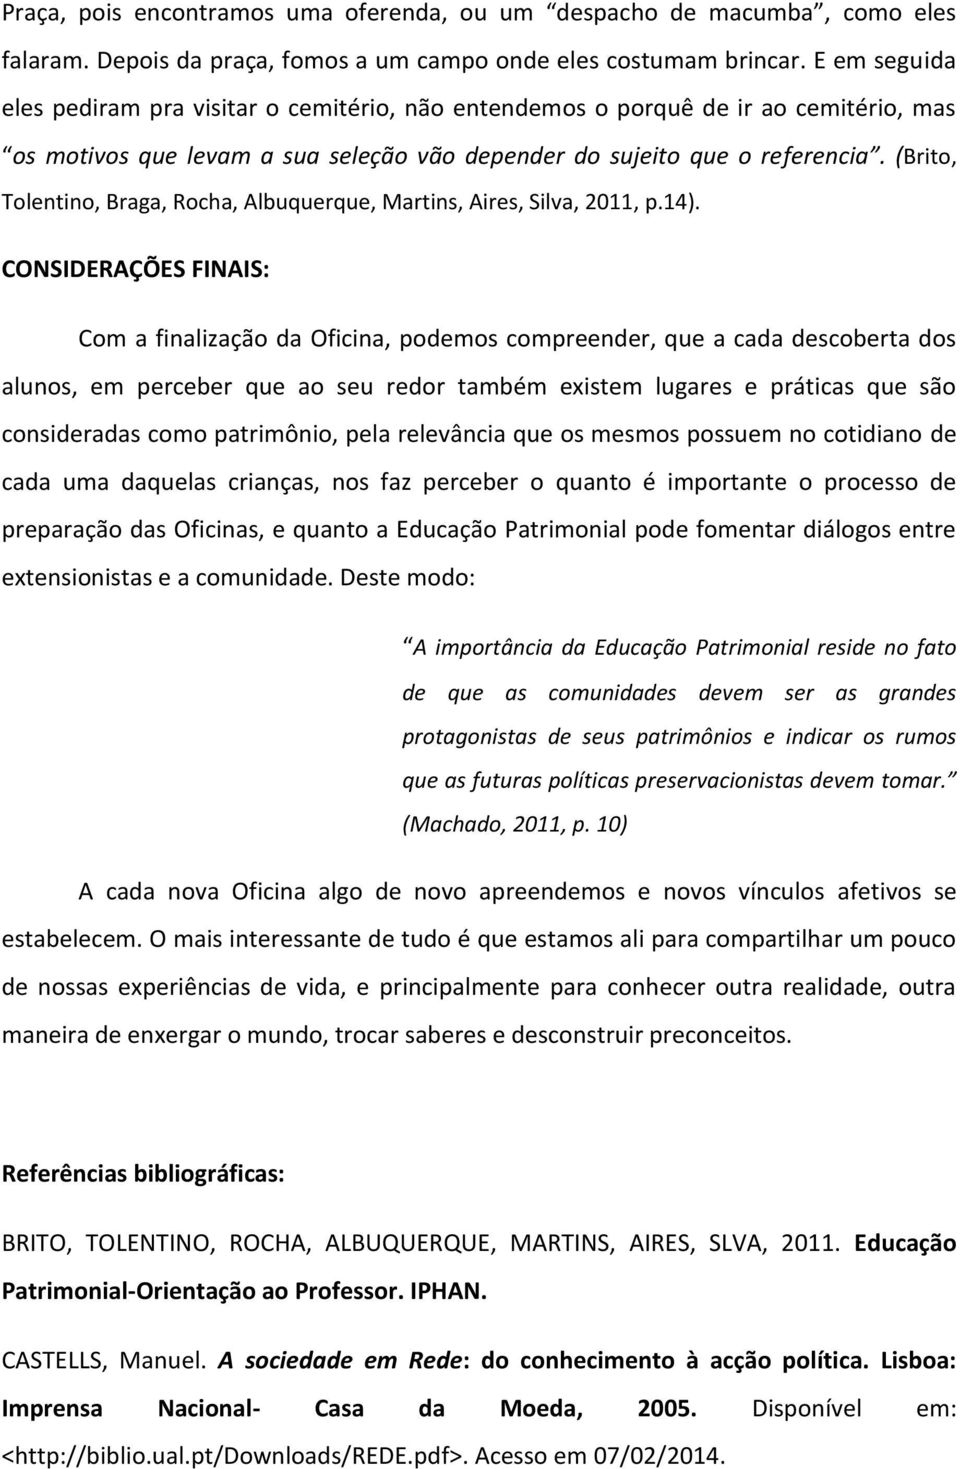 (Brito, Tolentino, Braga, Rocha, Albuquerque, Martins, Aires, Silva, 2011, p.14).